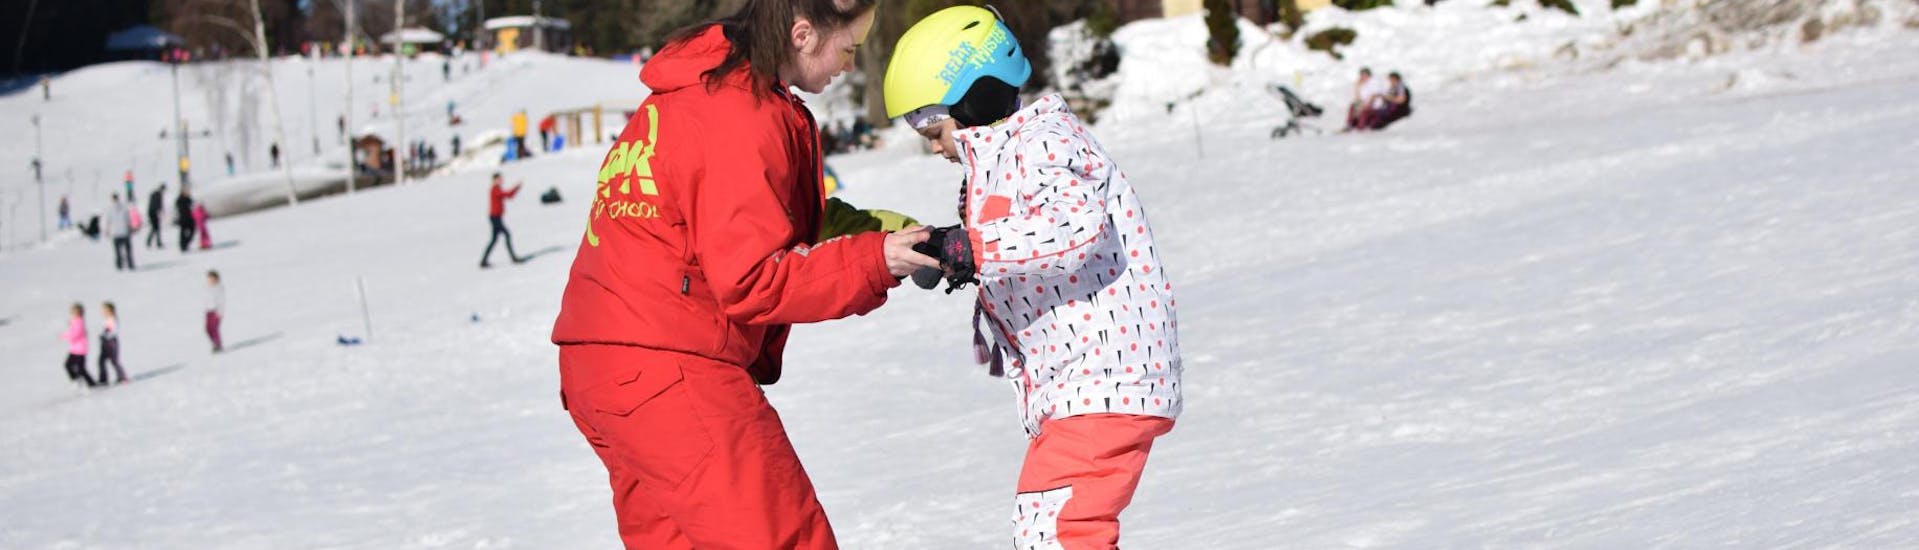 Privélessen snowboarden voor kinderen en volwassenen van alle niveaus.